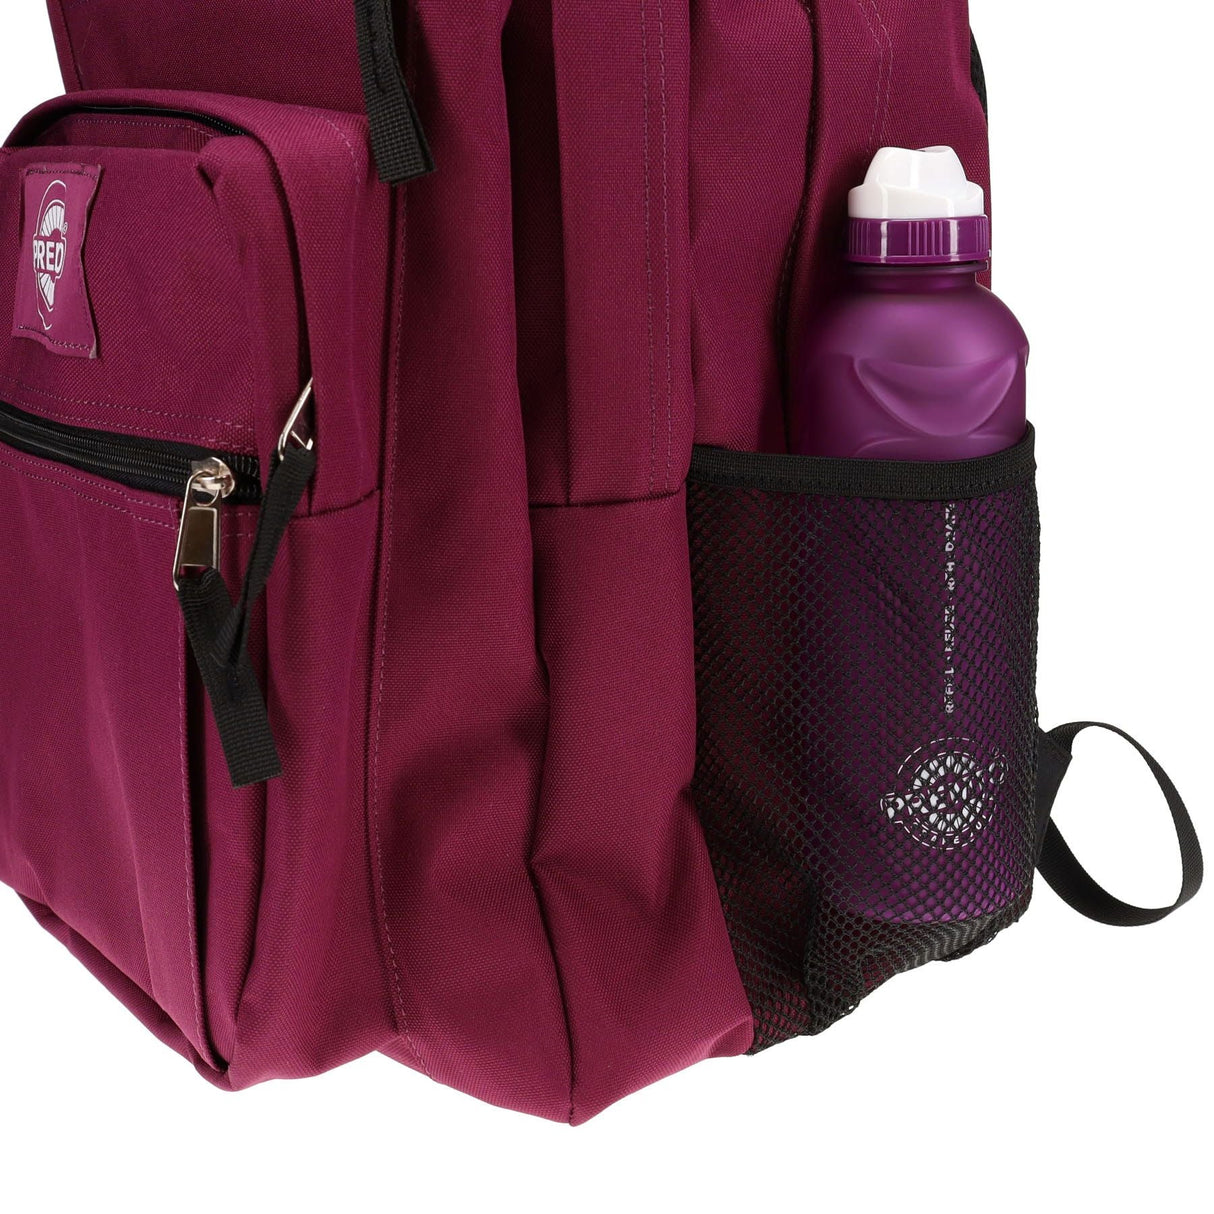 Premto 34L Backpack - Grape Juice-Backpacks-Premto|StationeryShop.co.uk